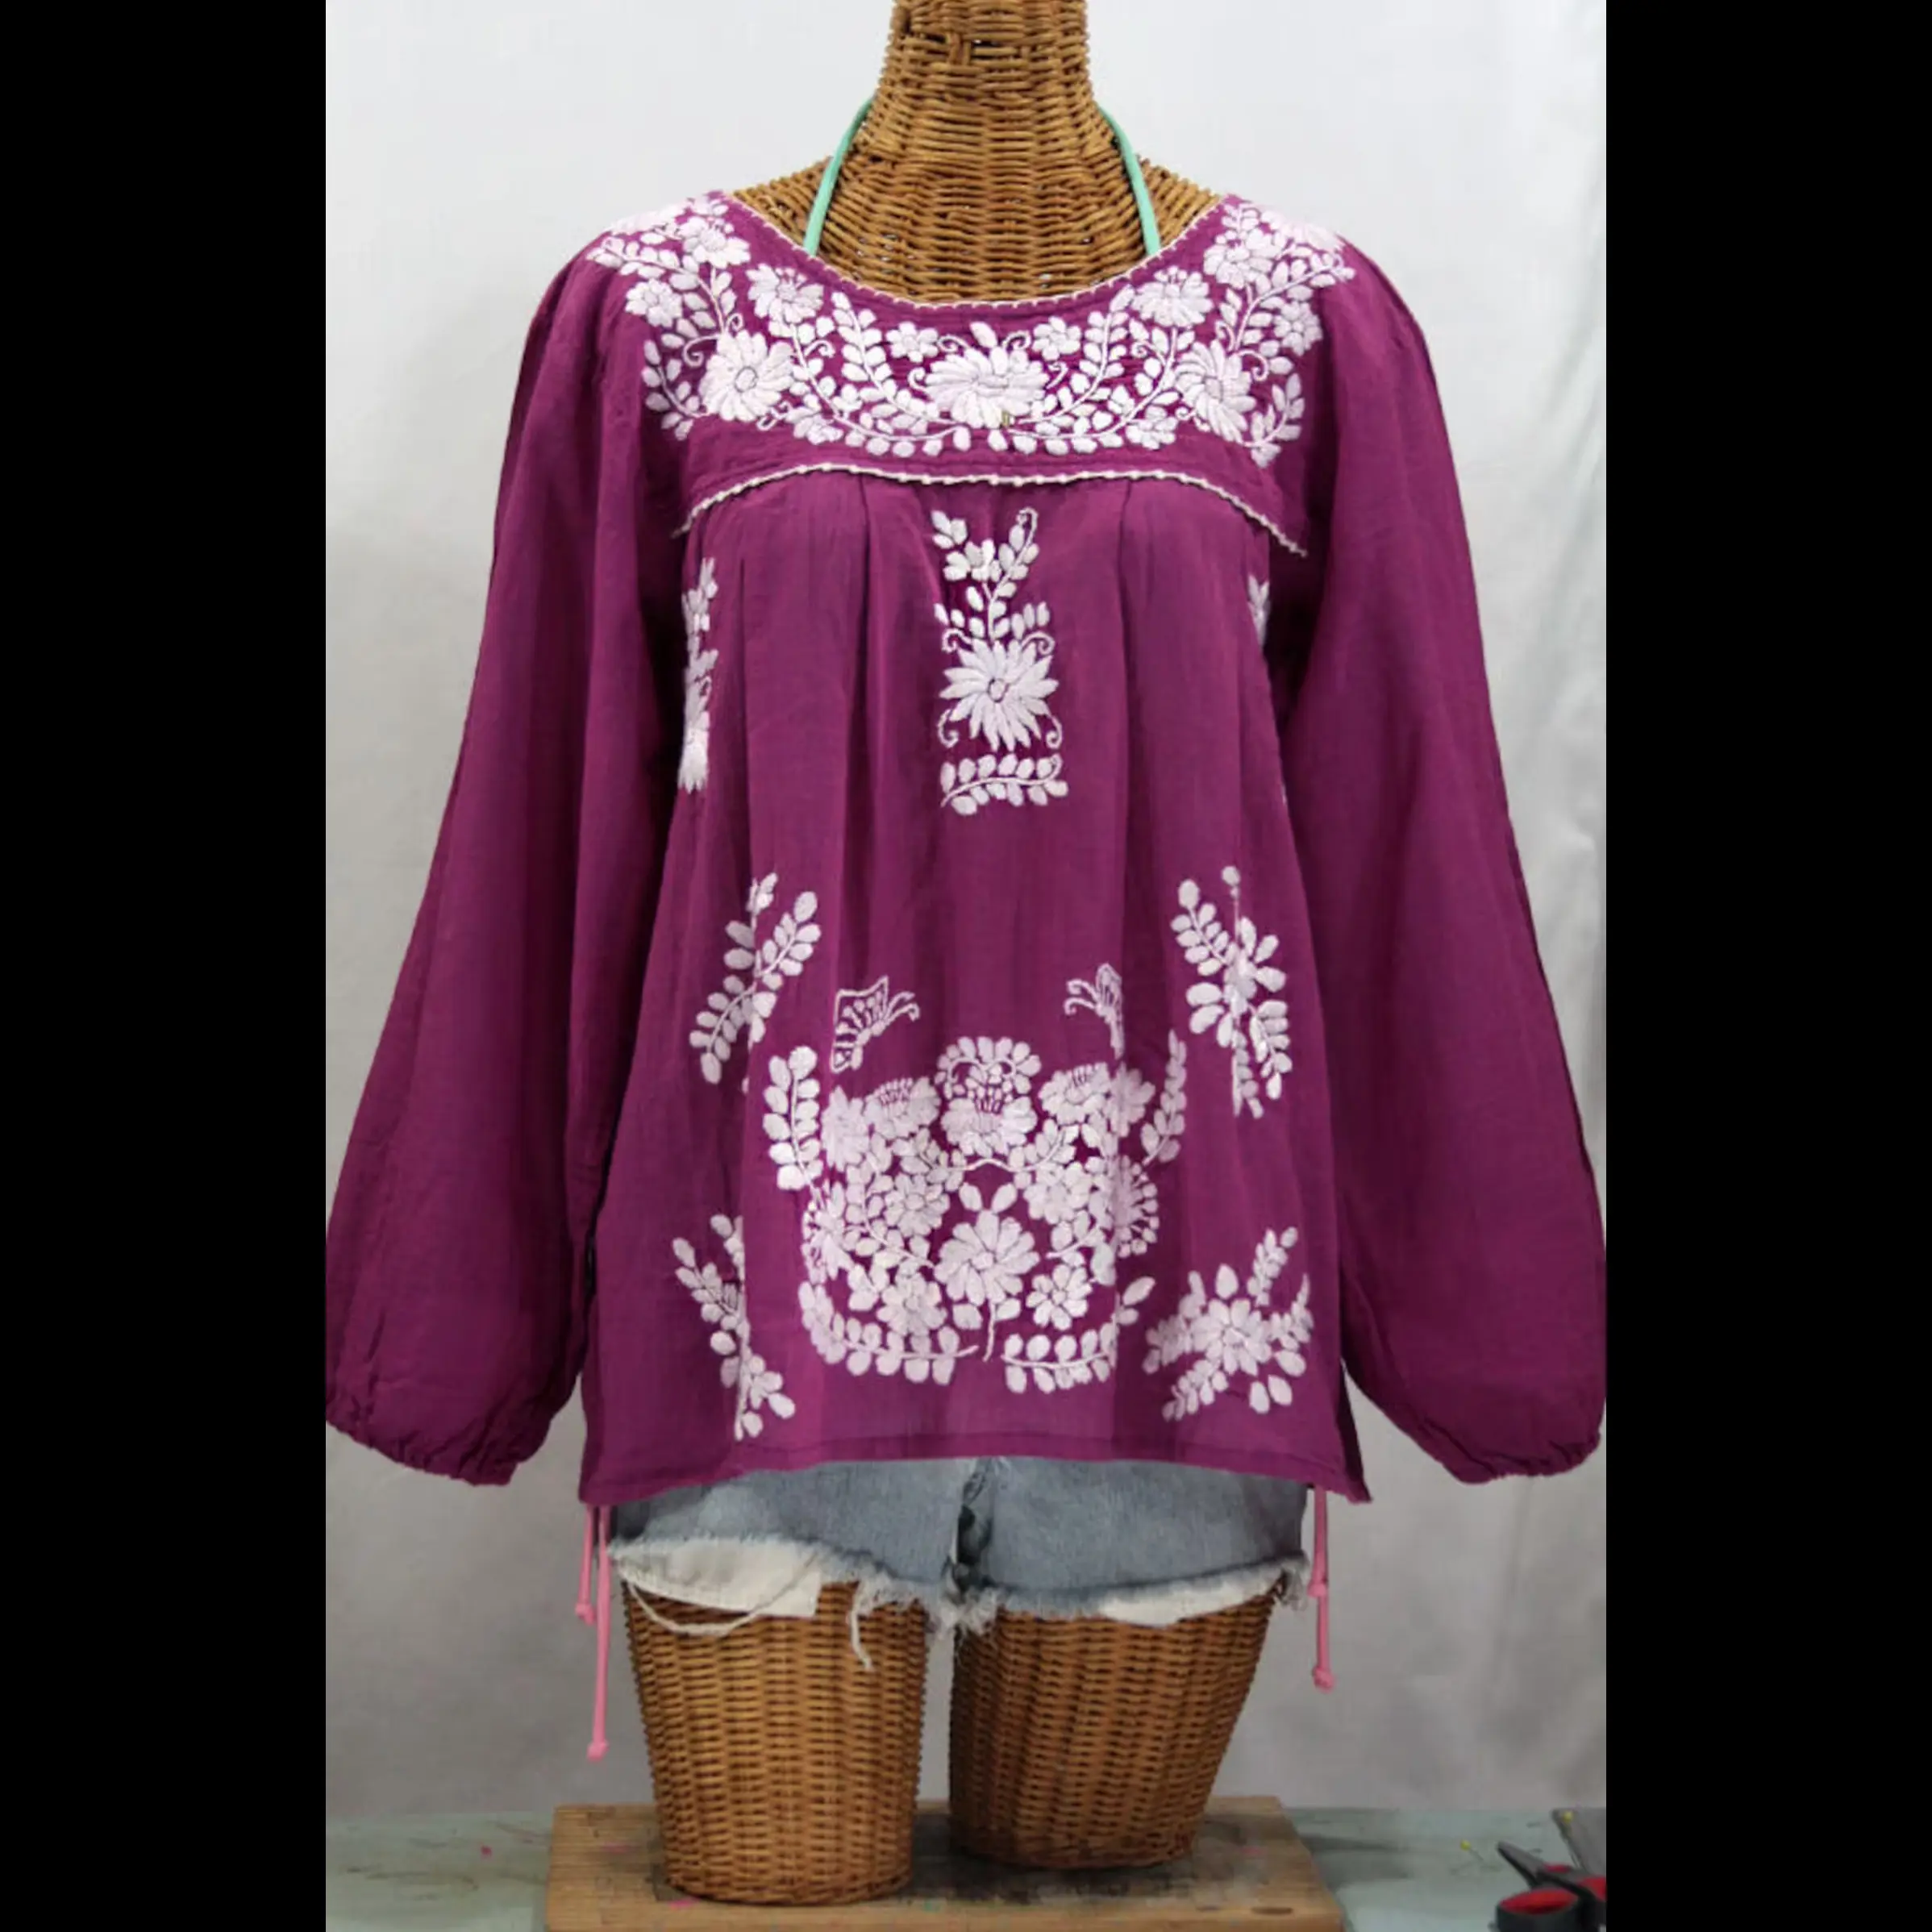 Stile vintage Boho Top manica lunga tunica estiva in cotone realizzata a mano messicana camicetta contadina ricamata per le donne